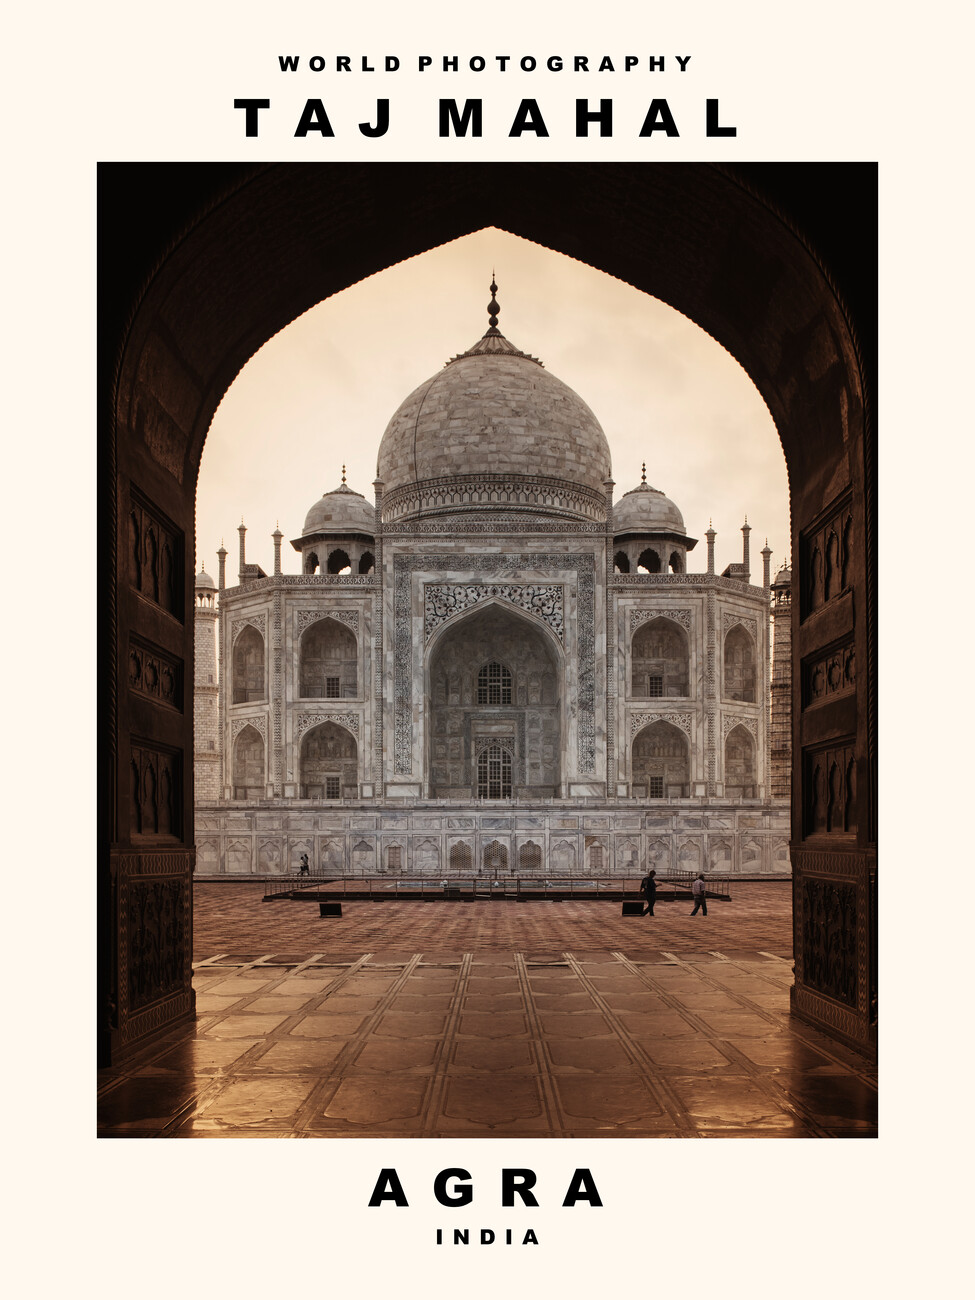 Taj Mahal (Agra, | +250 Wall Prints, India) Murals 000 | Posters, Art motifs